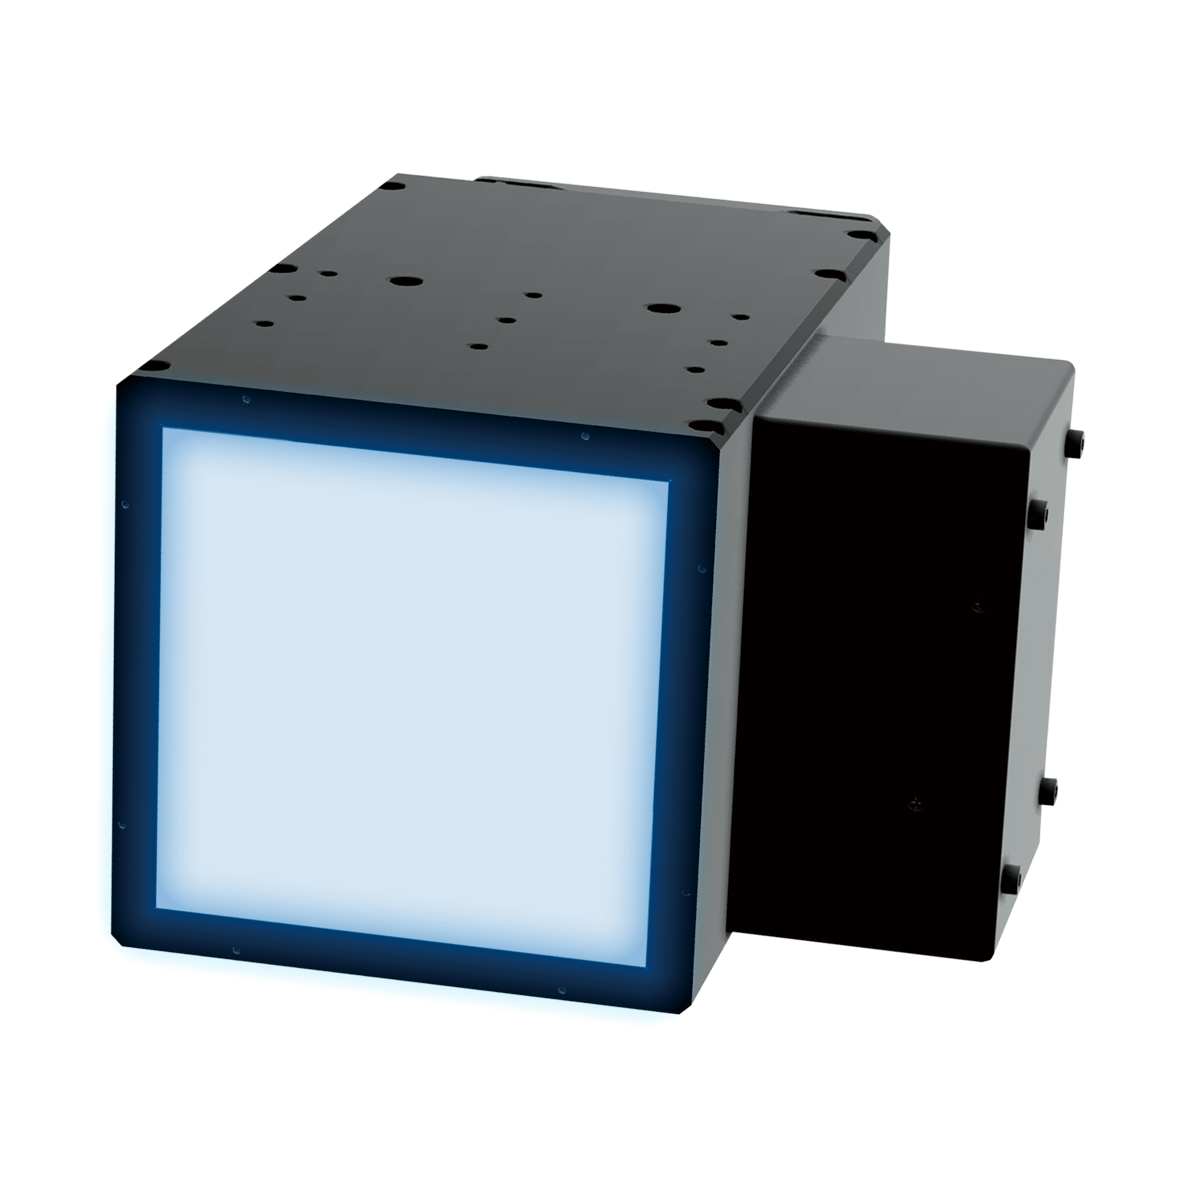 高出力空冷式面型UV-LED照射器ハイパワーモデル「HLDLシリーズ」